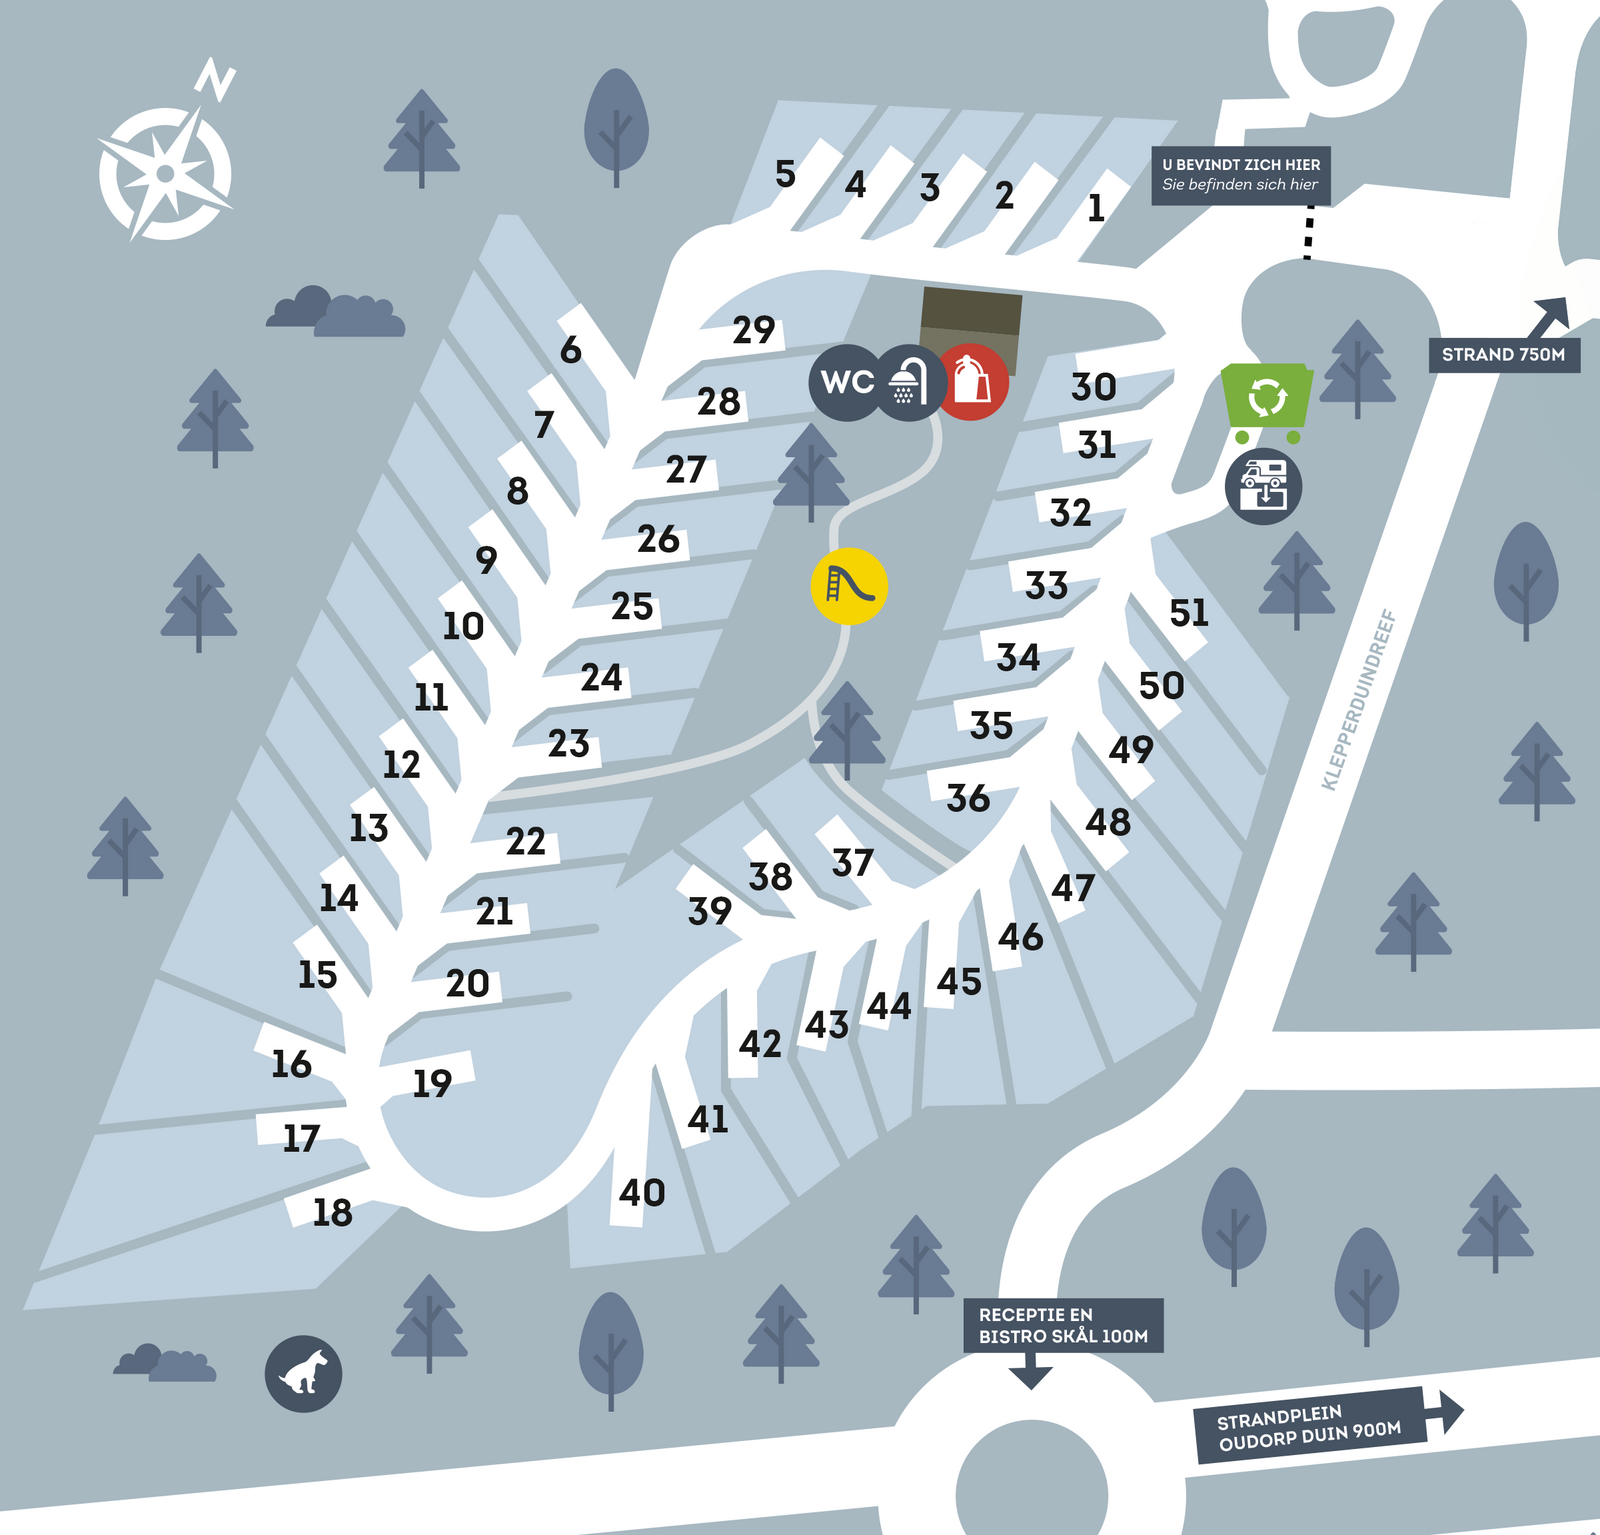 Map Drive-In Camper Park